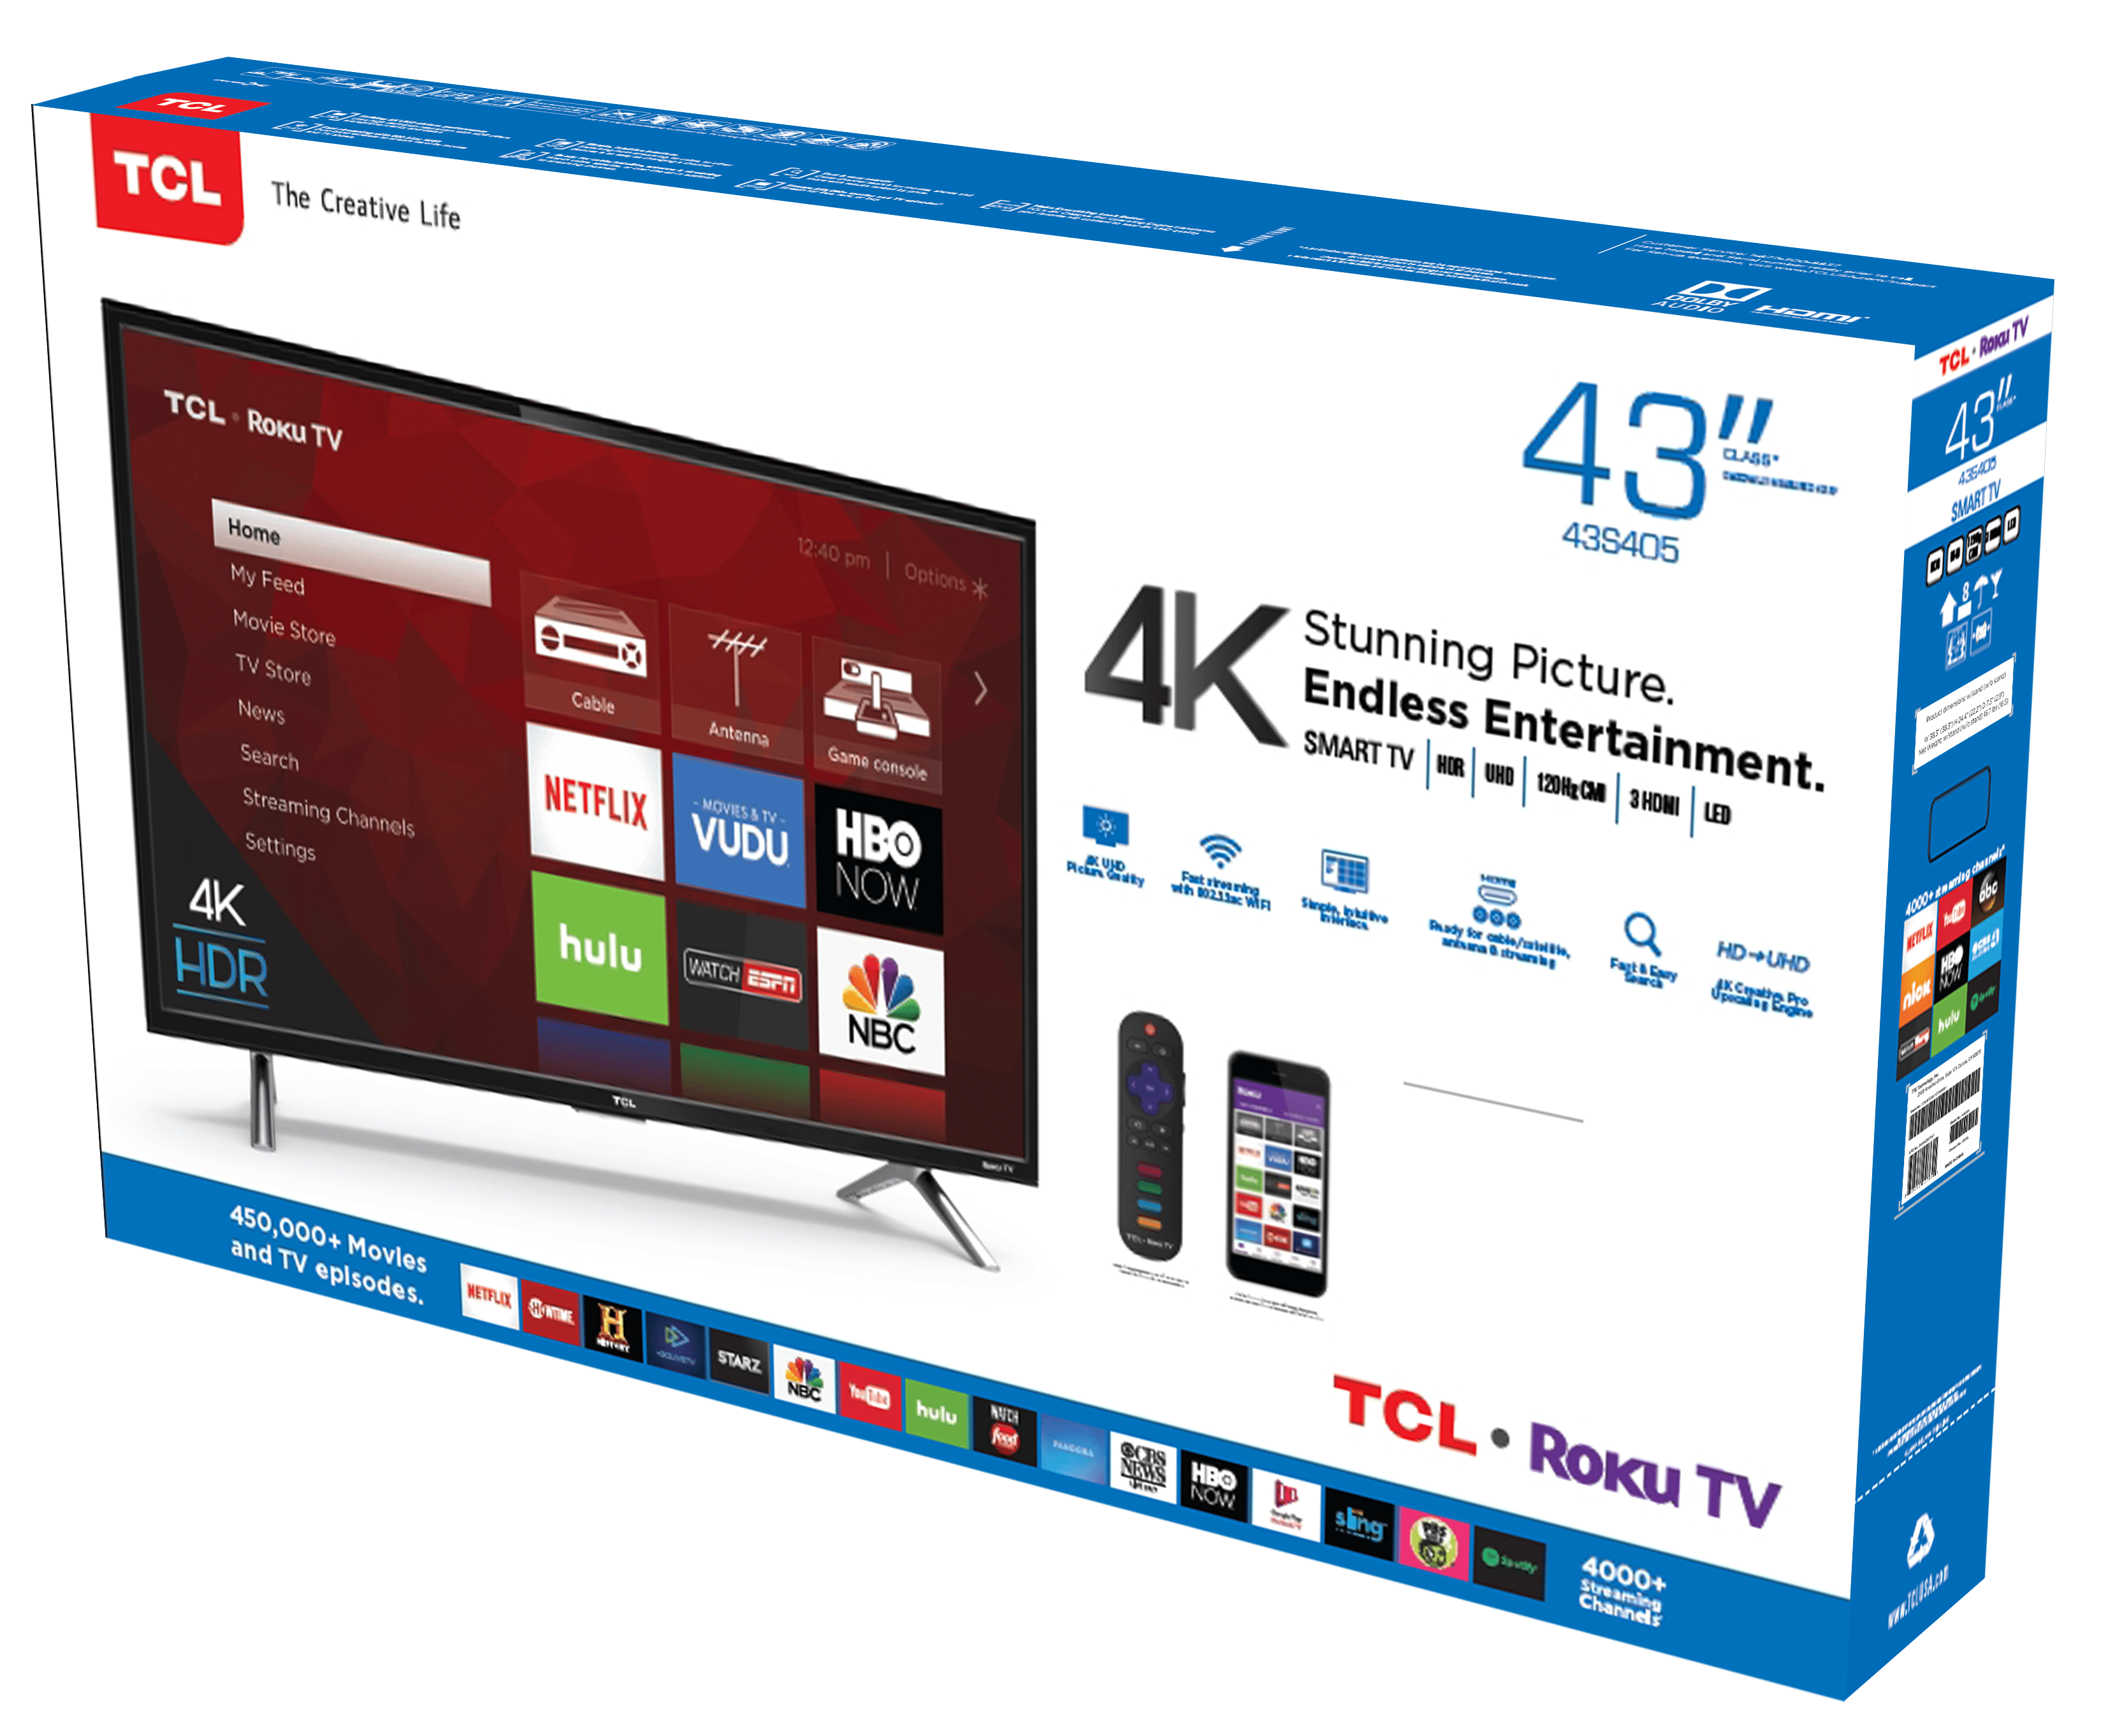 Televisior Smart Roku TCL 43¨ Serie 4 - TG Computer - Computadoras,  Laptops, Impresoras, Televisores Smart TV